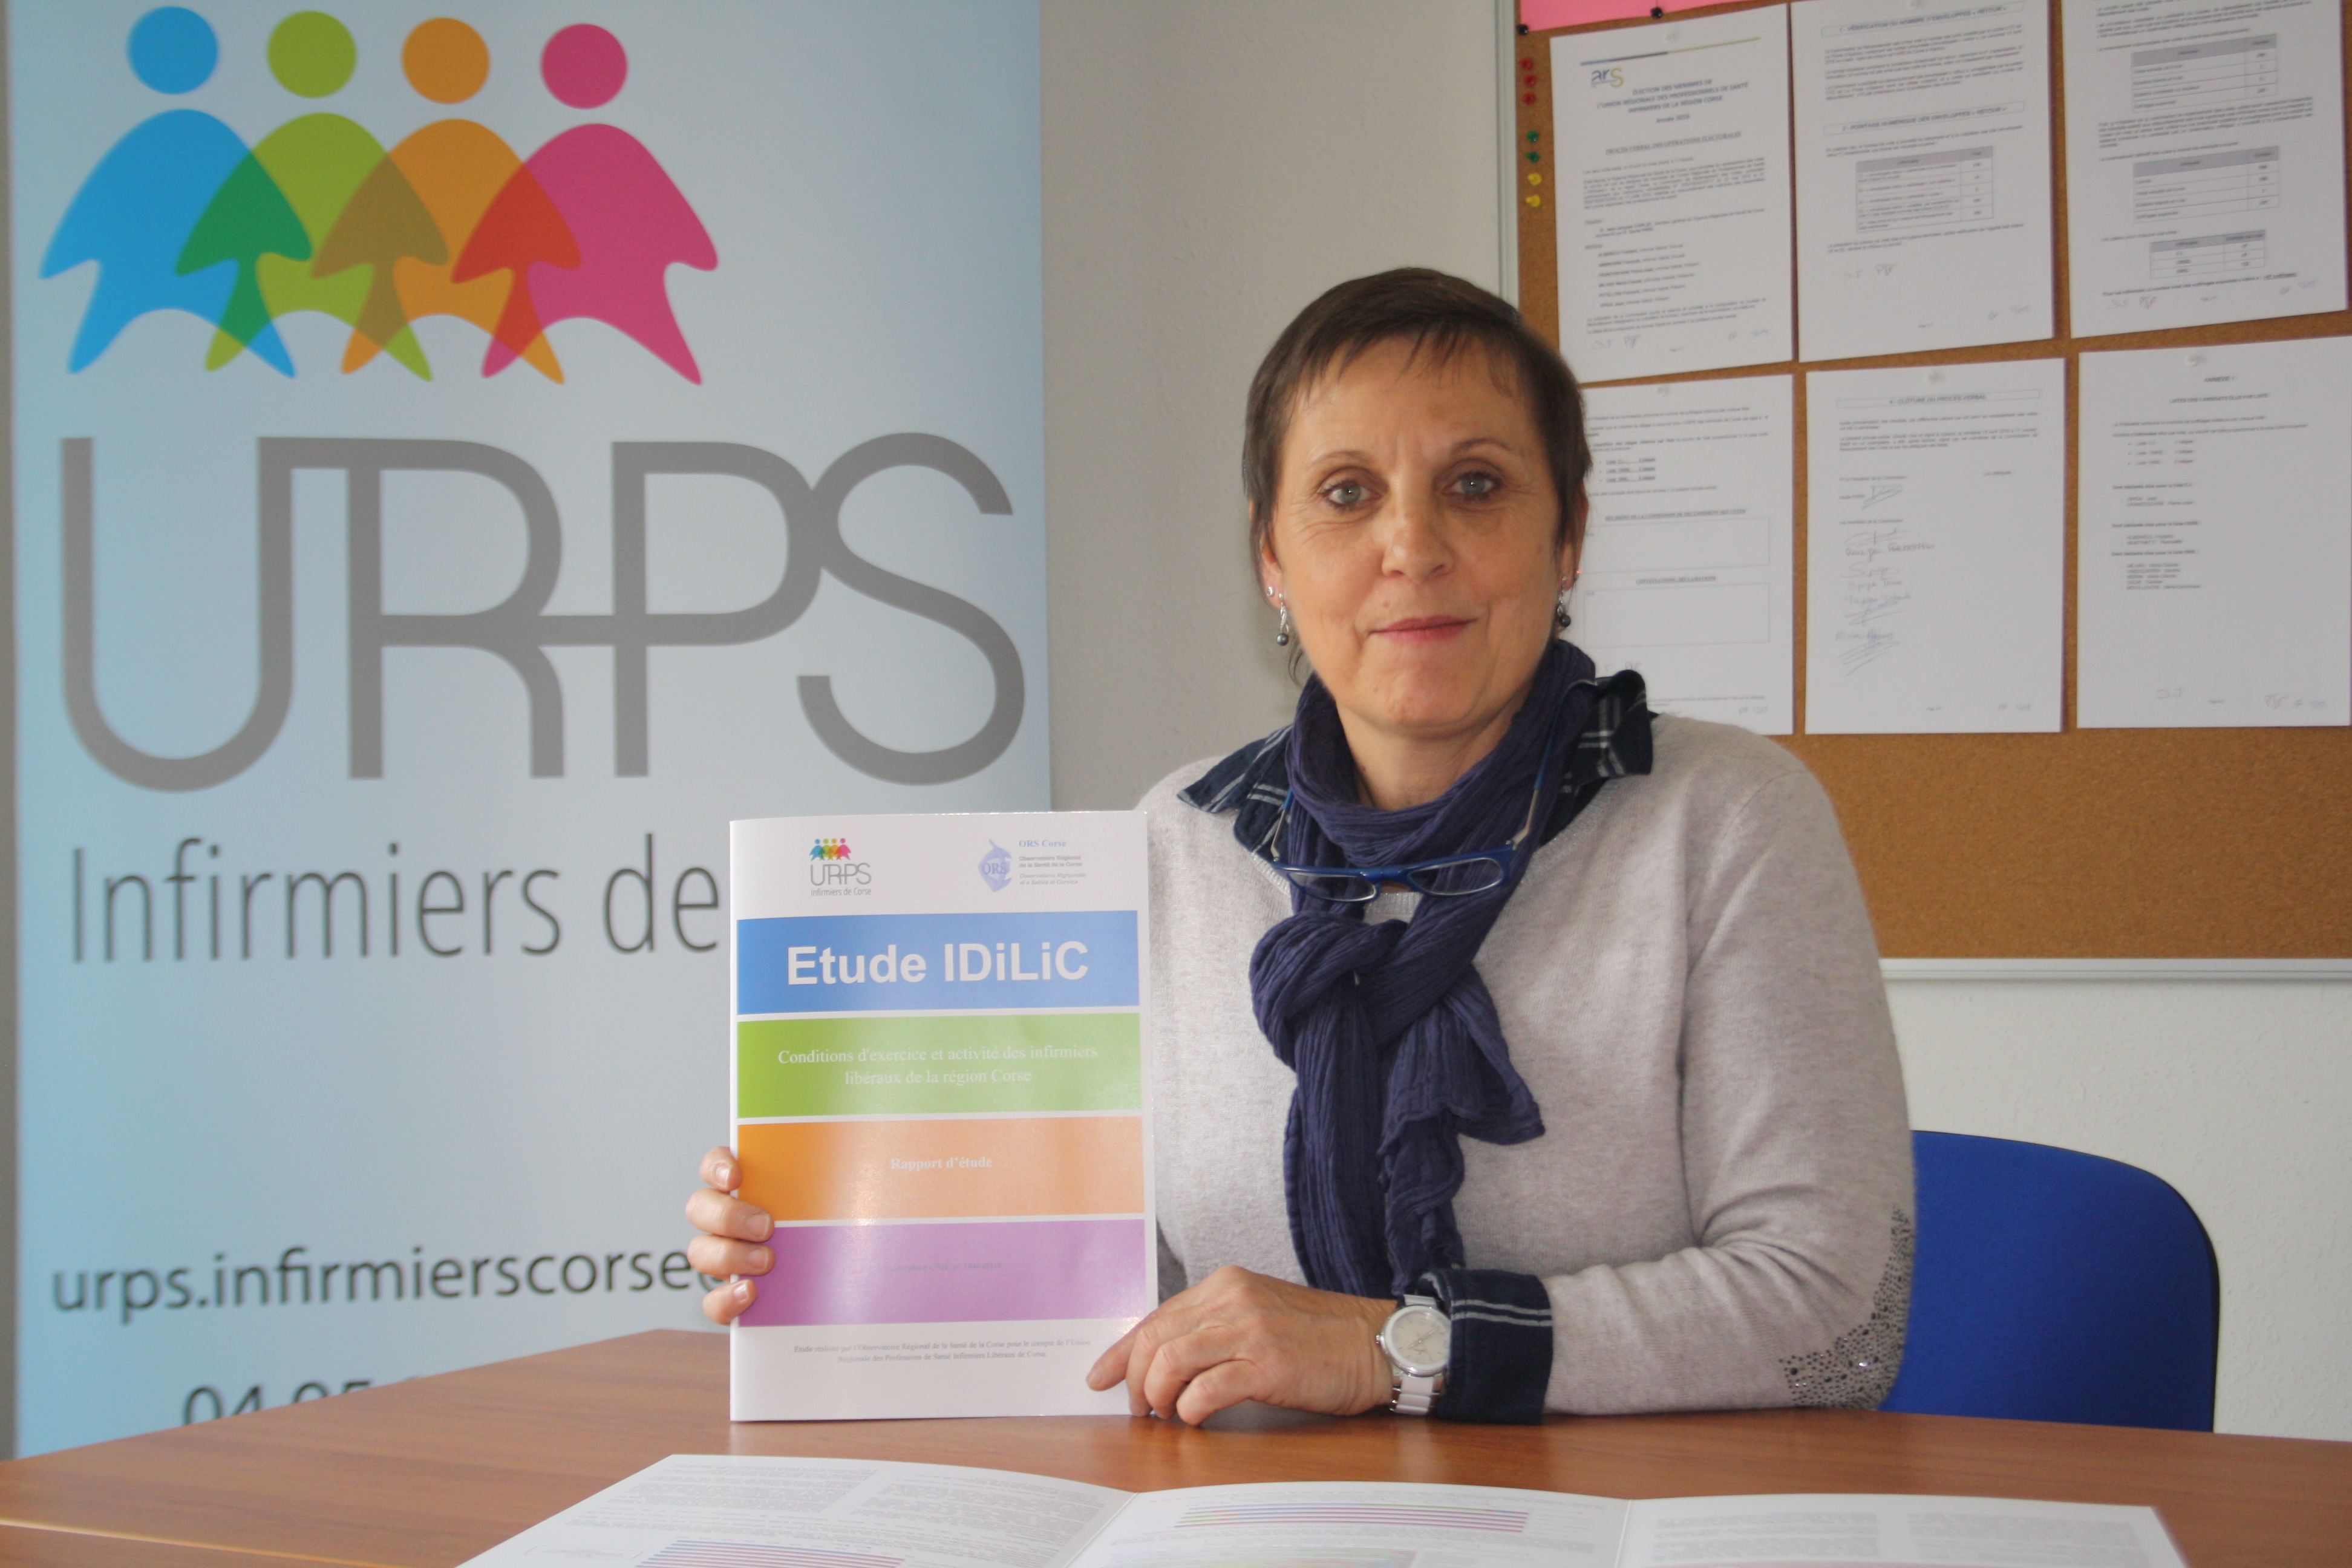 Journée internationale de l’infirmière : L'URPS de Corse dévoile son étude IDILIC 